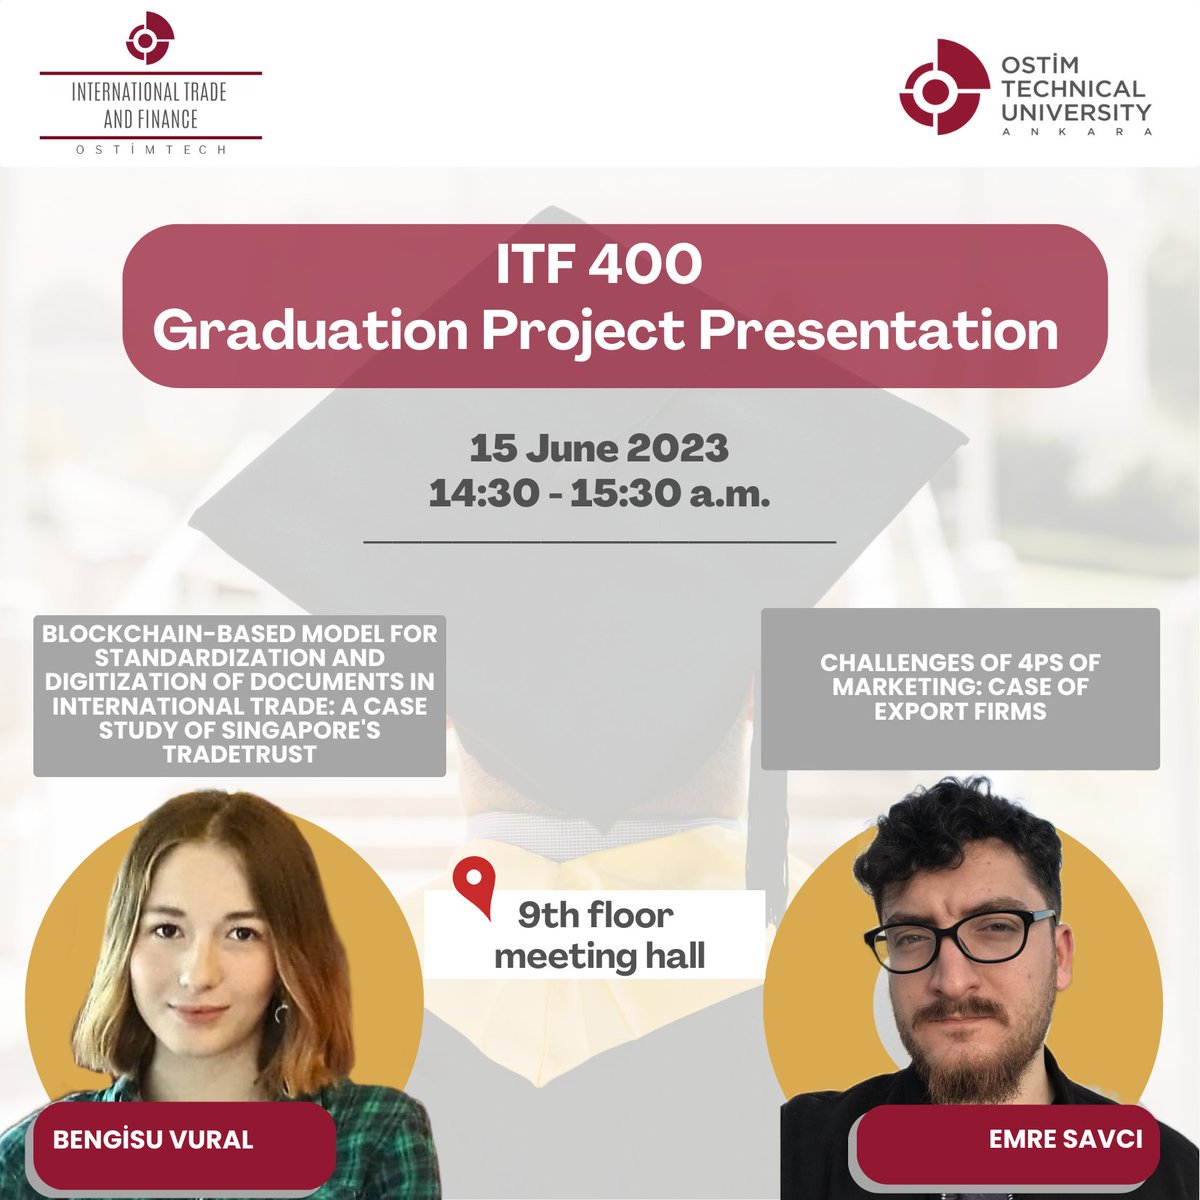 ITF 400 Graduation Project dersi kapsamında öğrencilerimizin bitirme projeleri sunumları 15 Haziran 2023 tarihinde saat 14:30'da gerçekleştirilecektir.